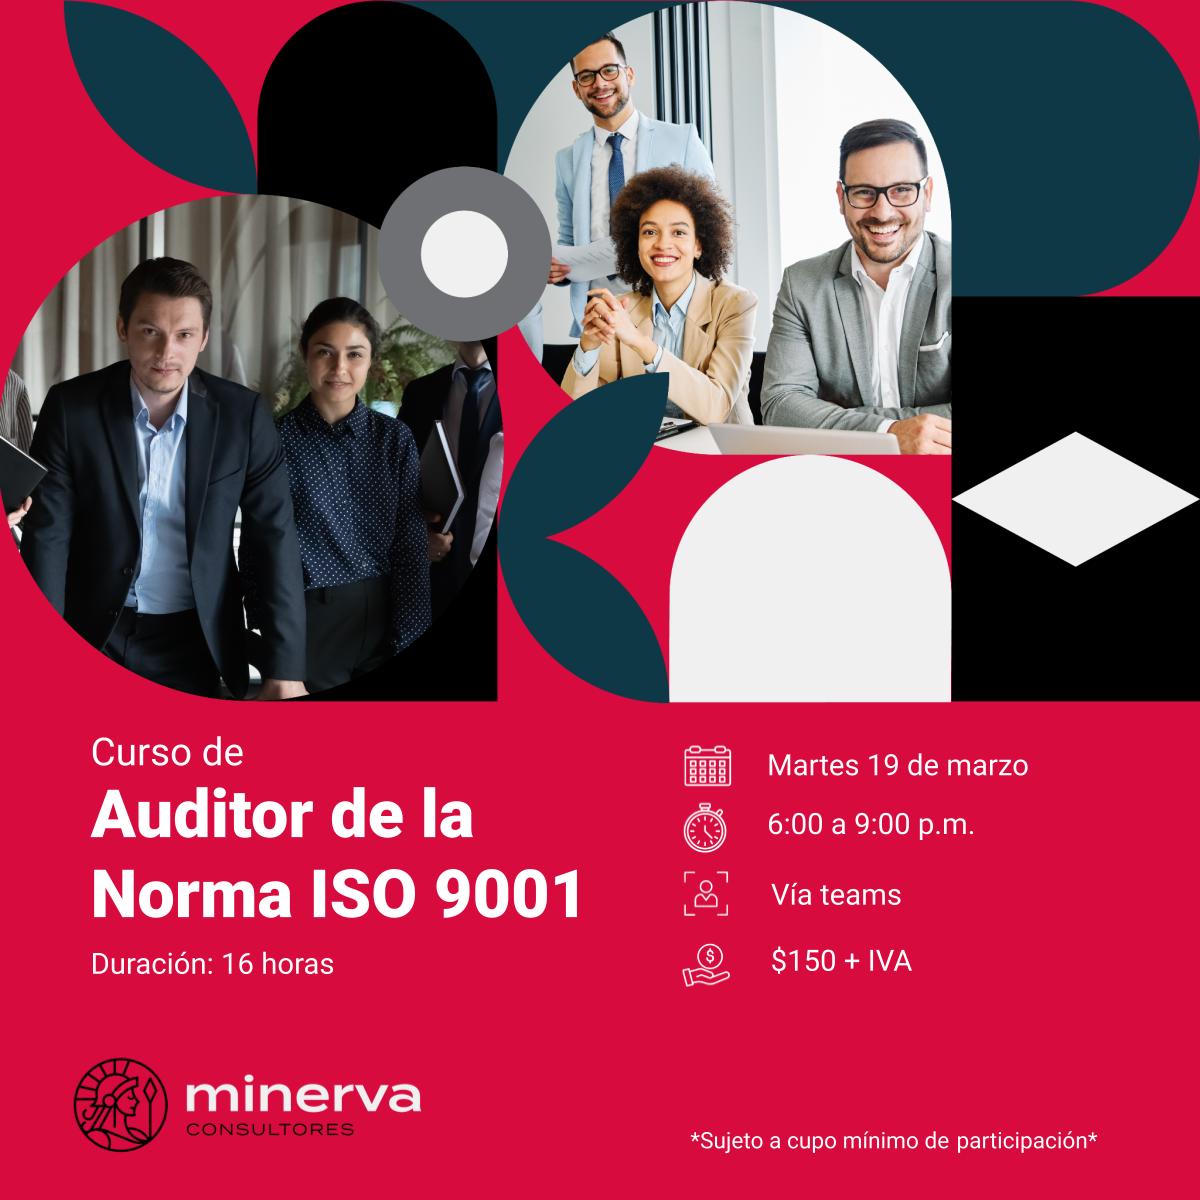 Auditor de la norma ISO 9001